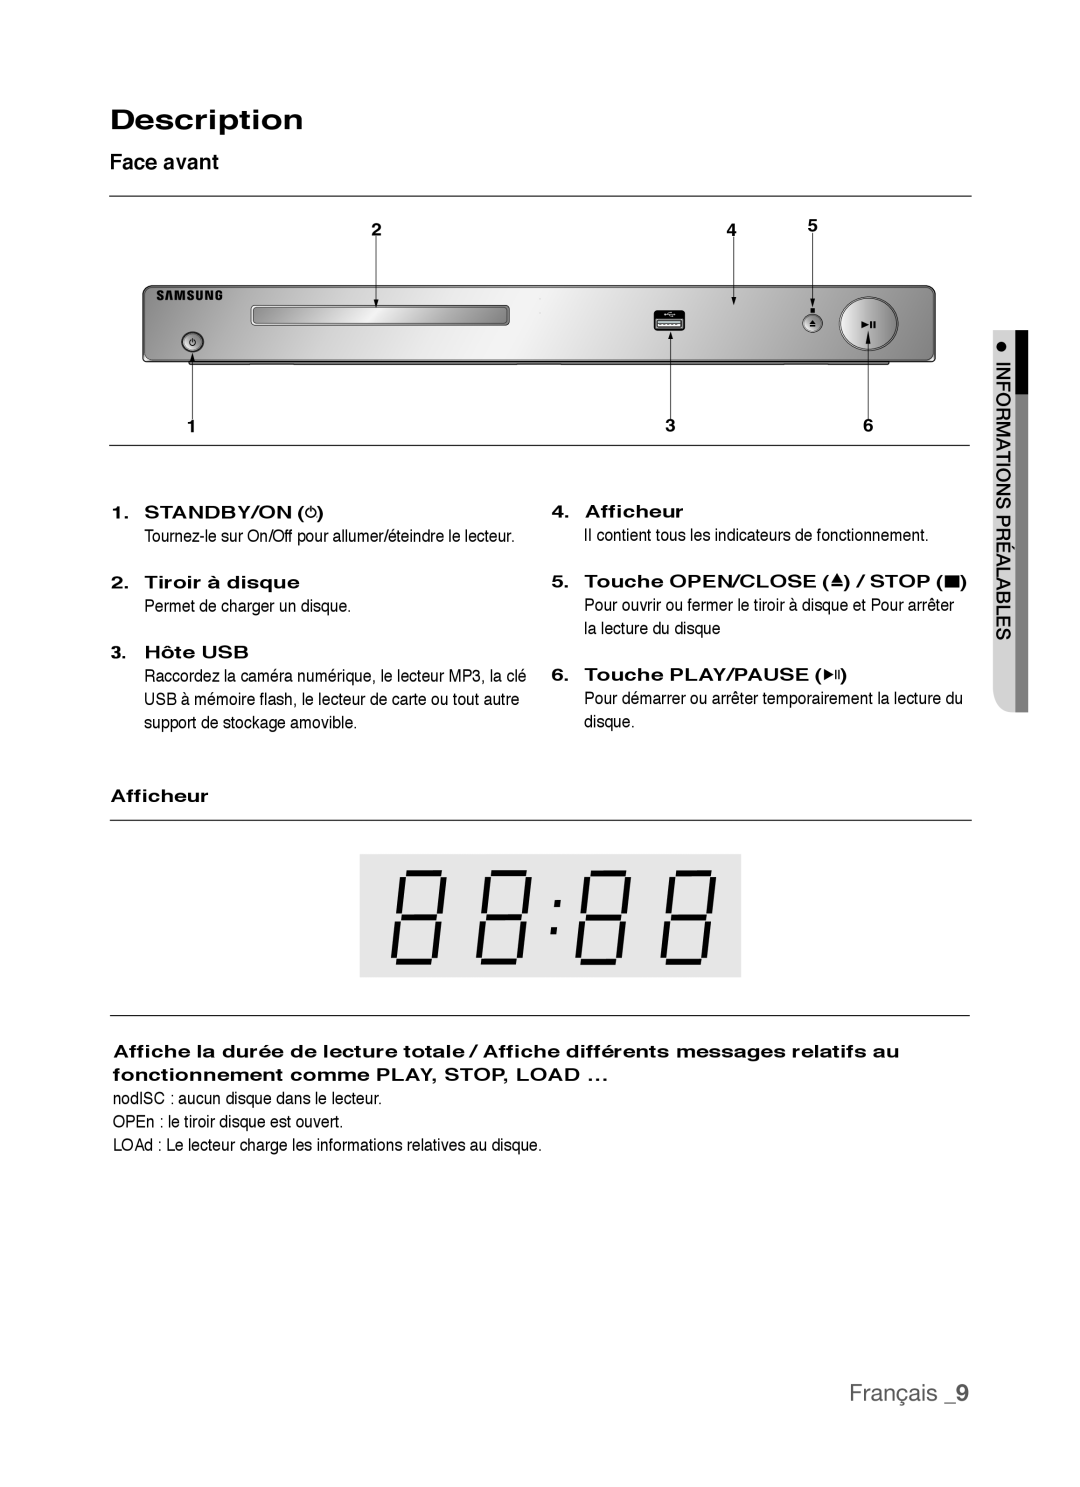 Samsung AK68-01770G Face avant, Informations, Préalables, Description, Français, Standby/On, Afficheur, Tiroir à disque 